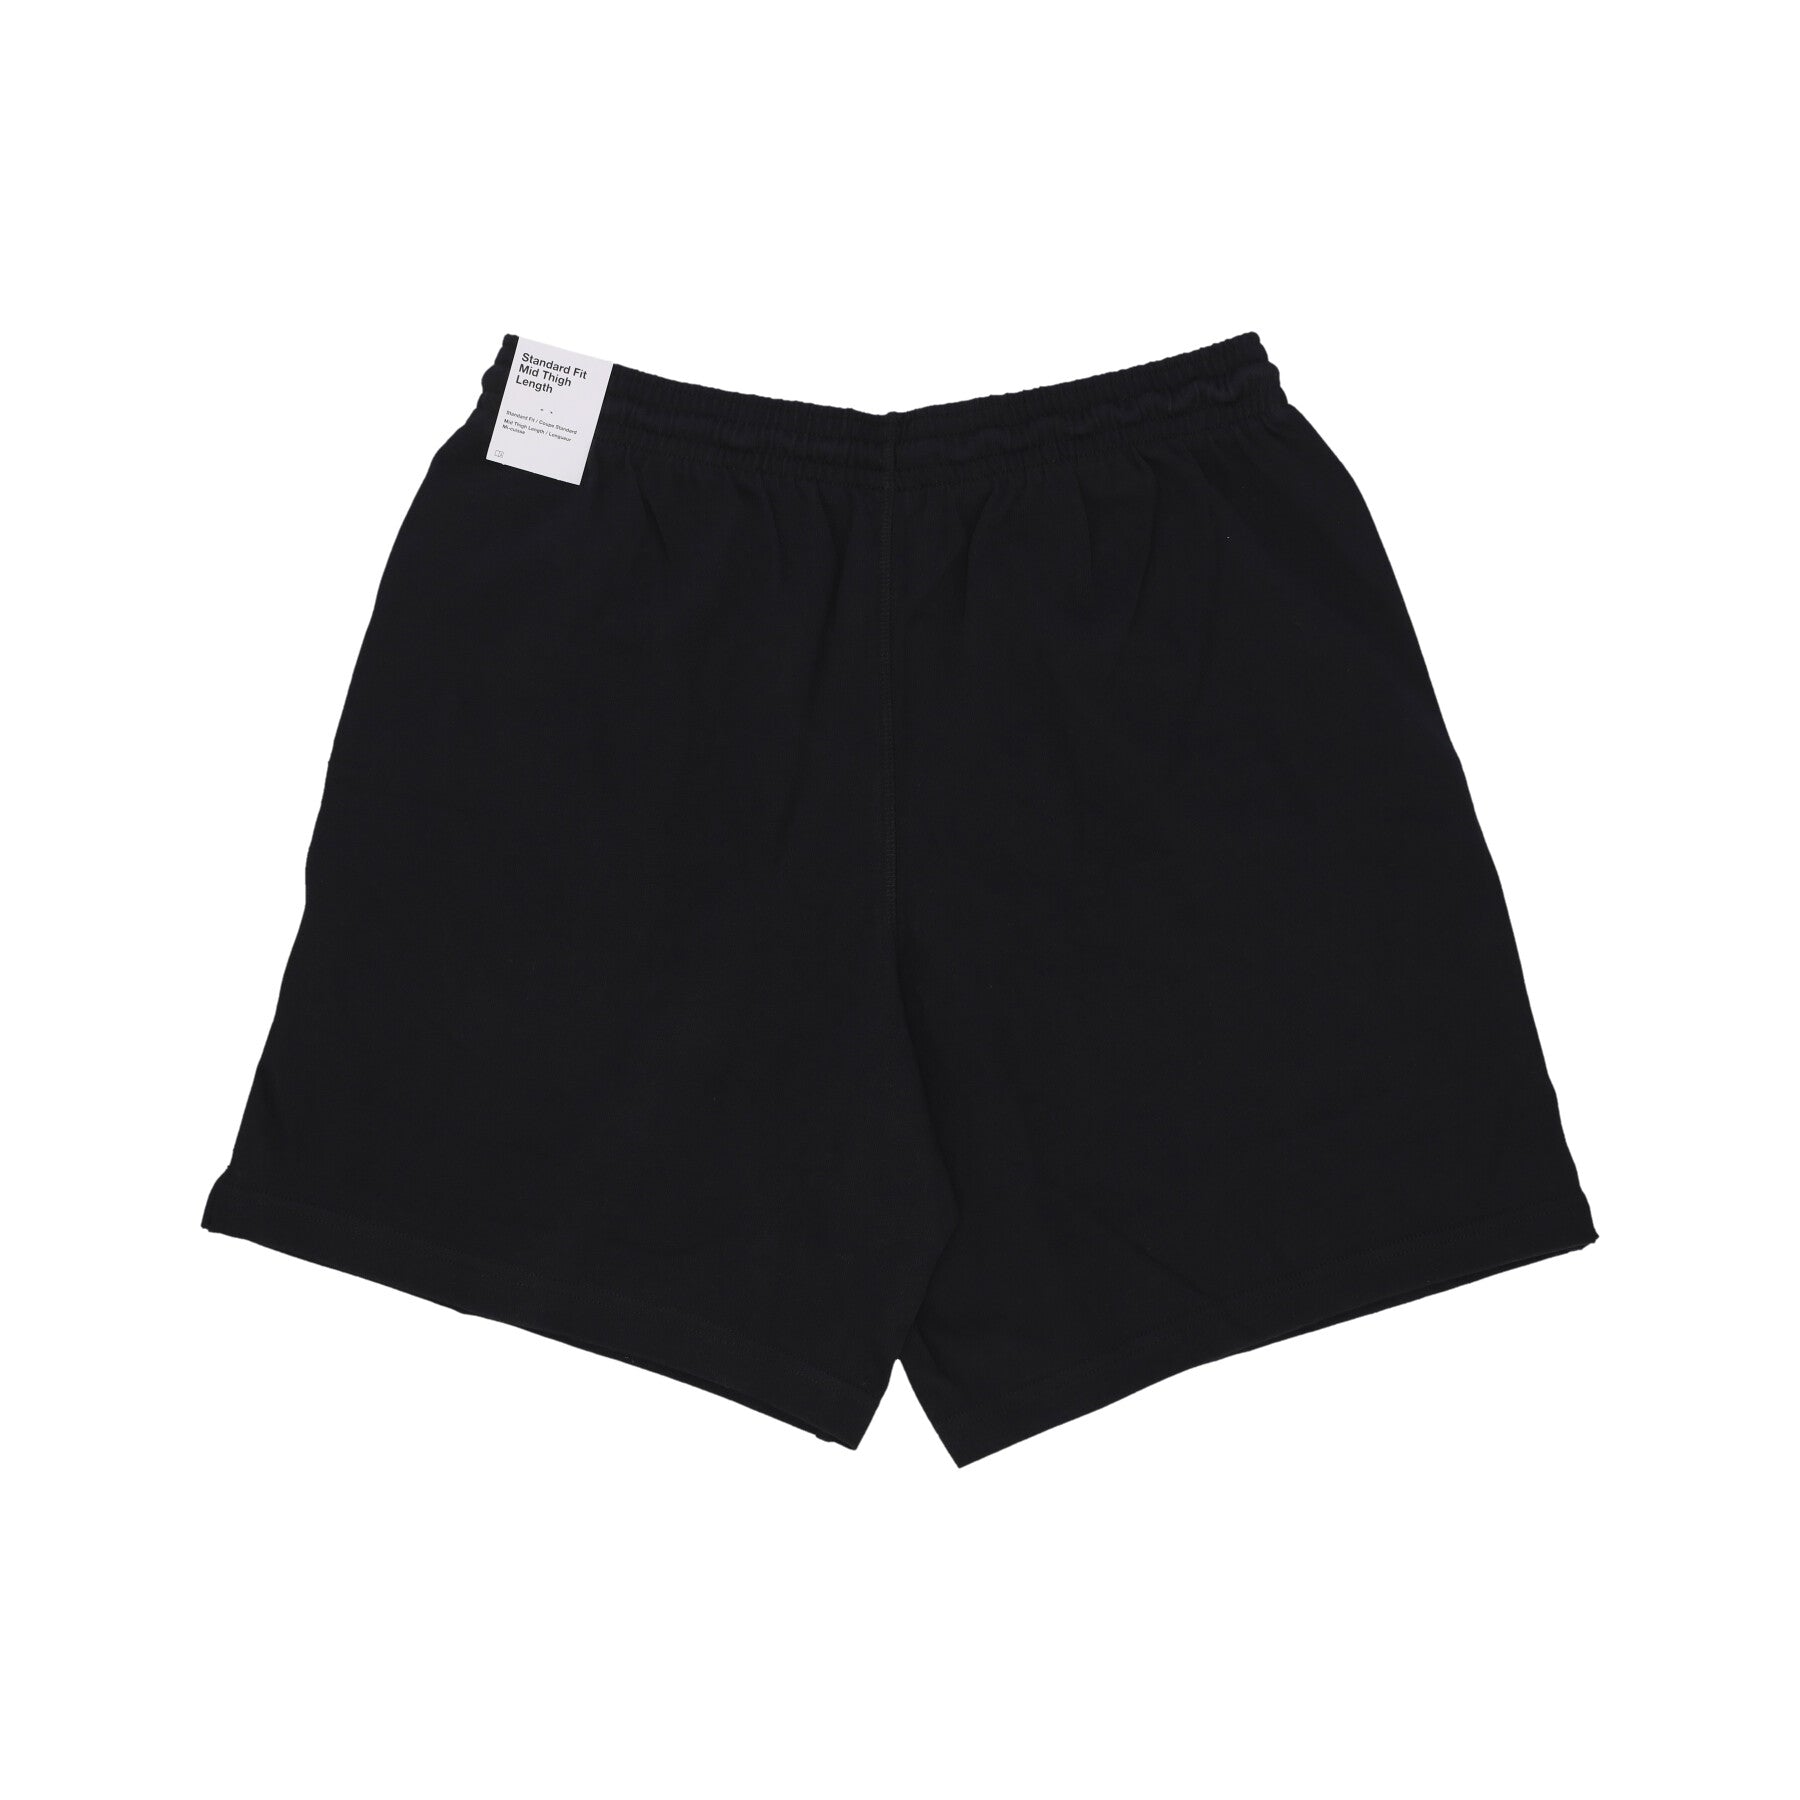 Pantalone Corto Tuta Uomo Club Knit Short Black/white FQ4359-010